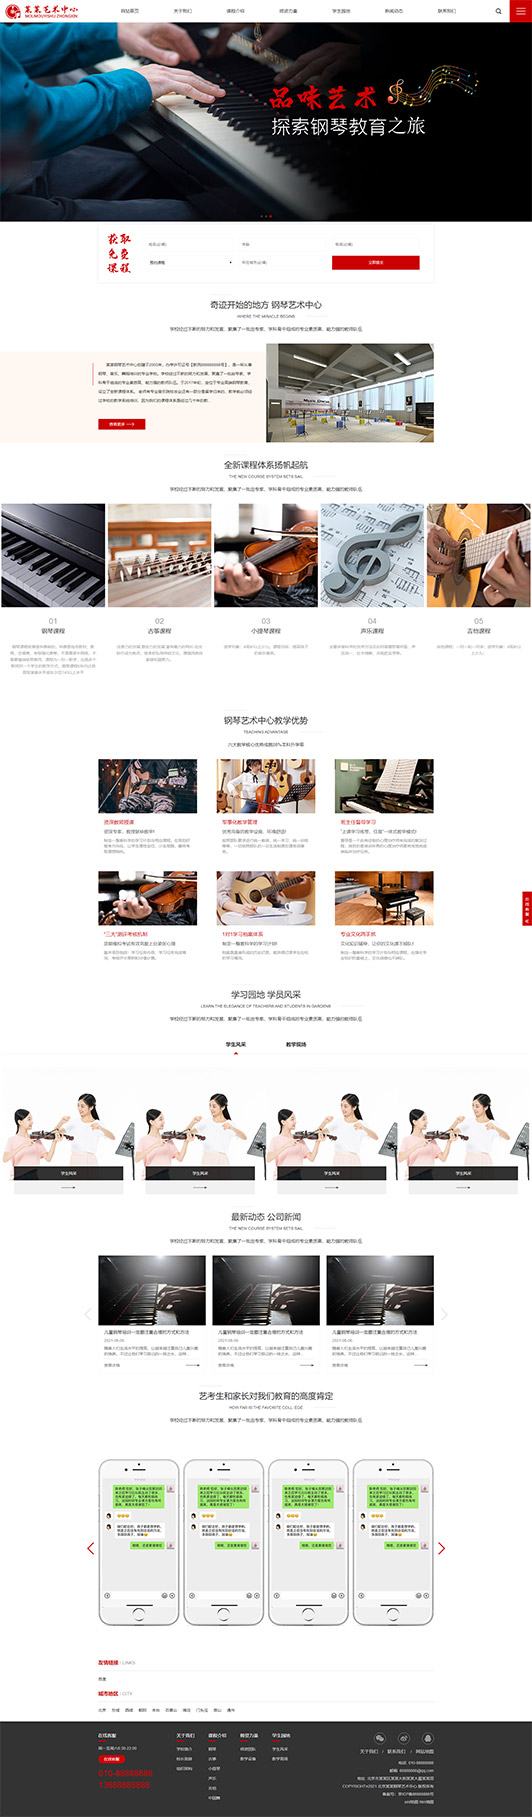 常州钢琴艺术培训公司响应式企业网站